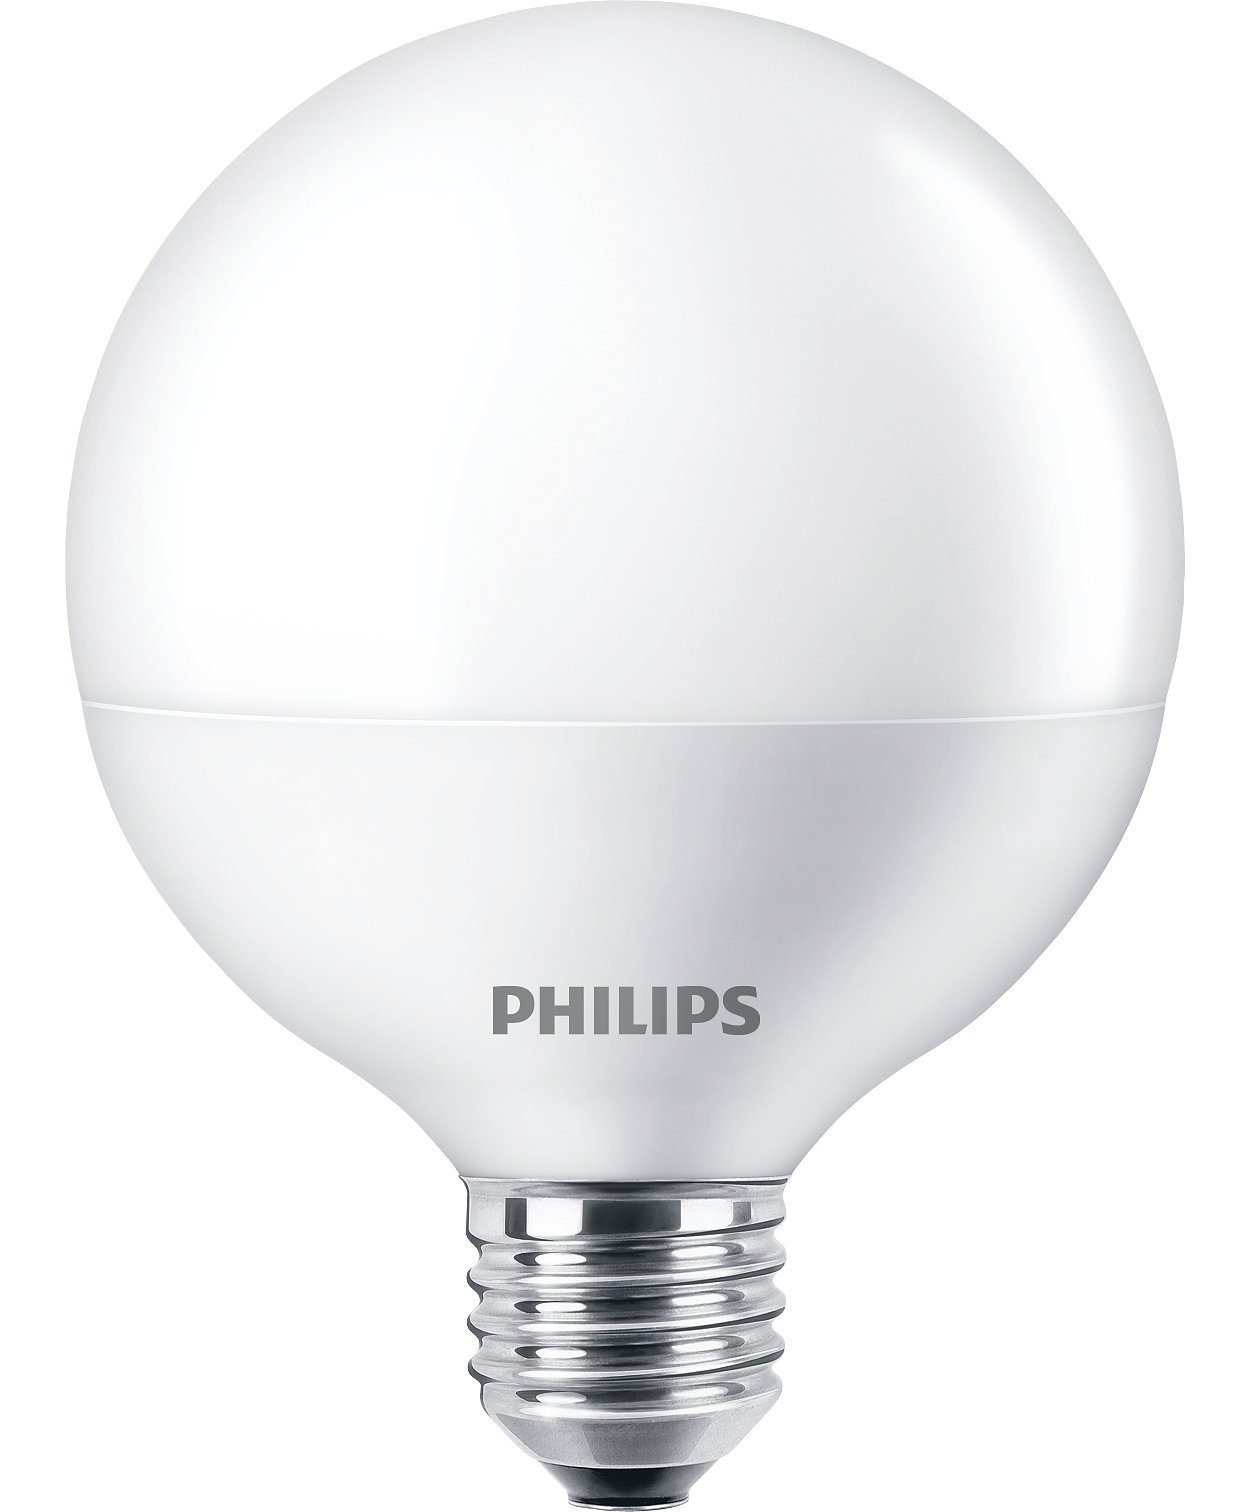 The affordable LEDbulbs solution